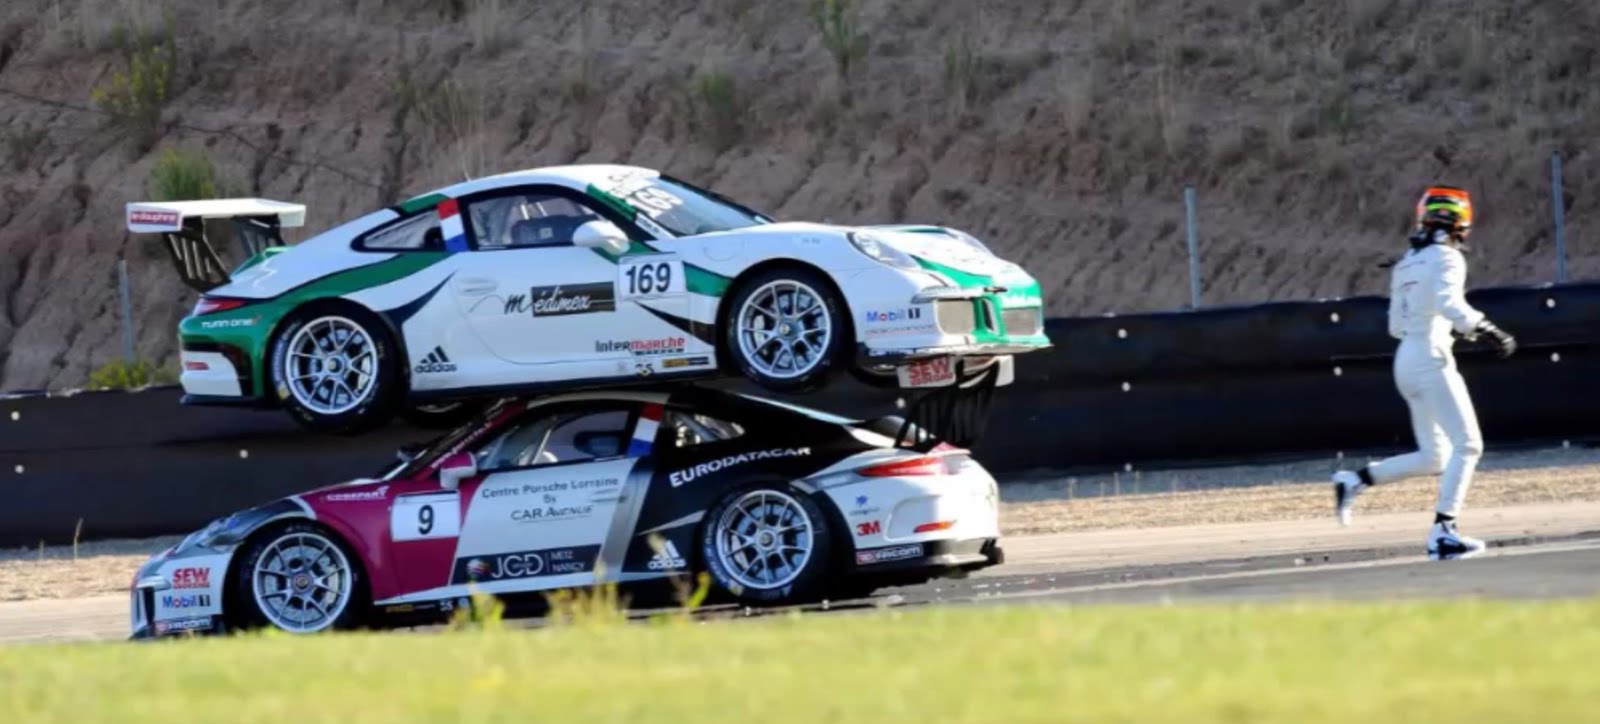 12-Porsche-stack-up